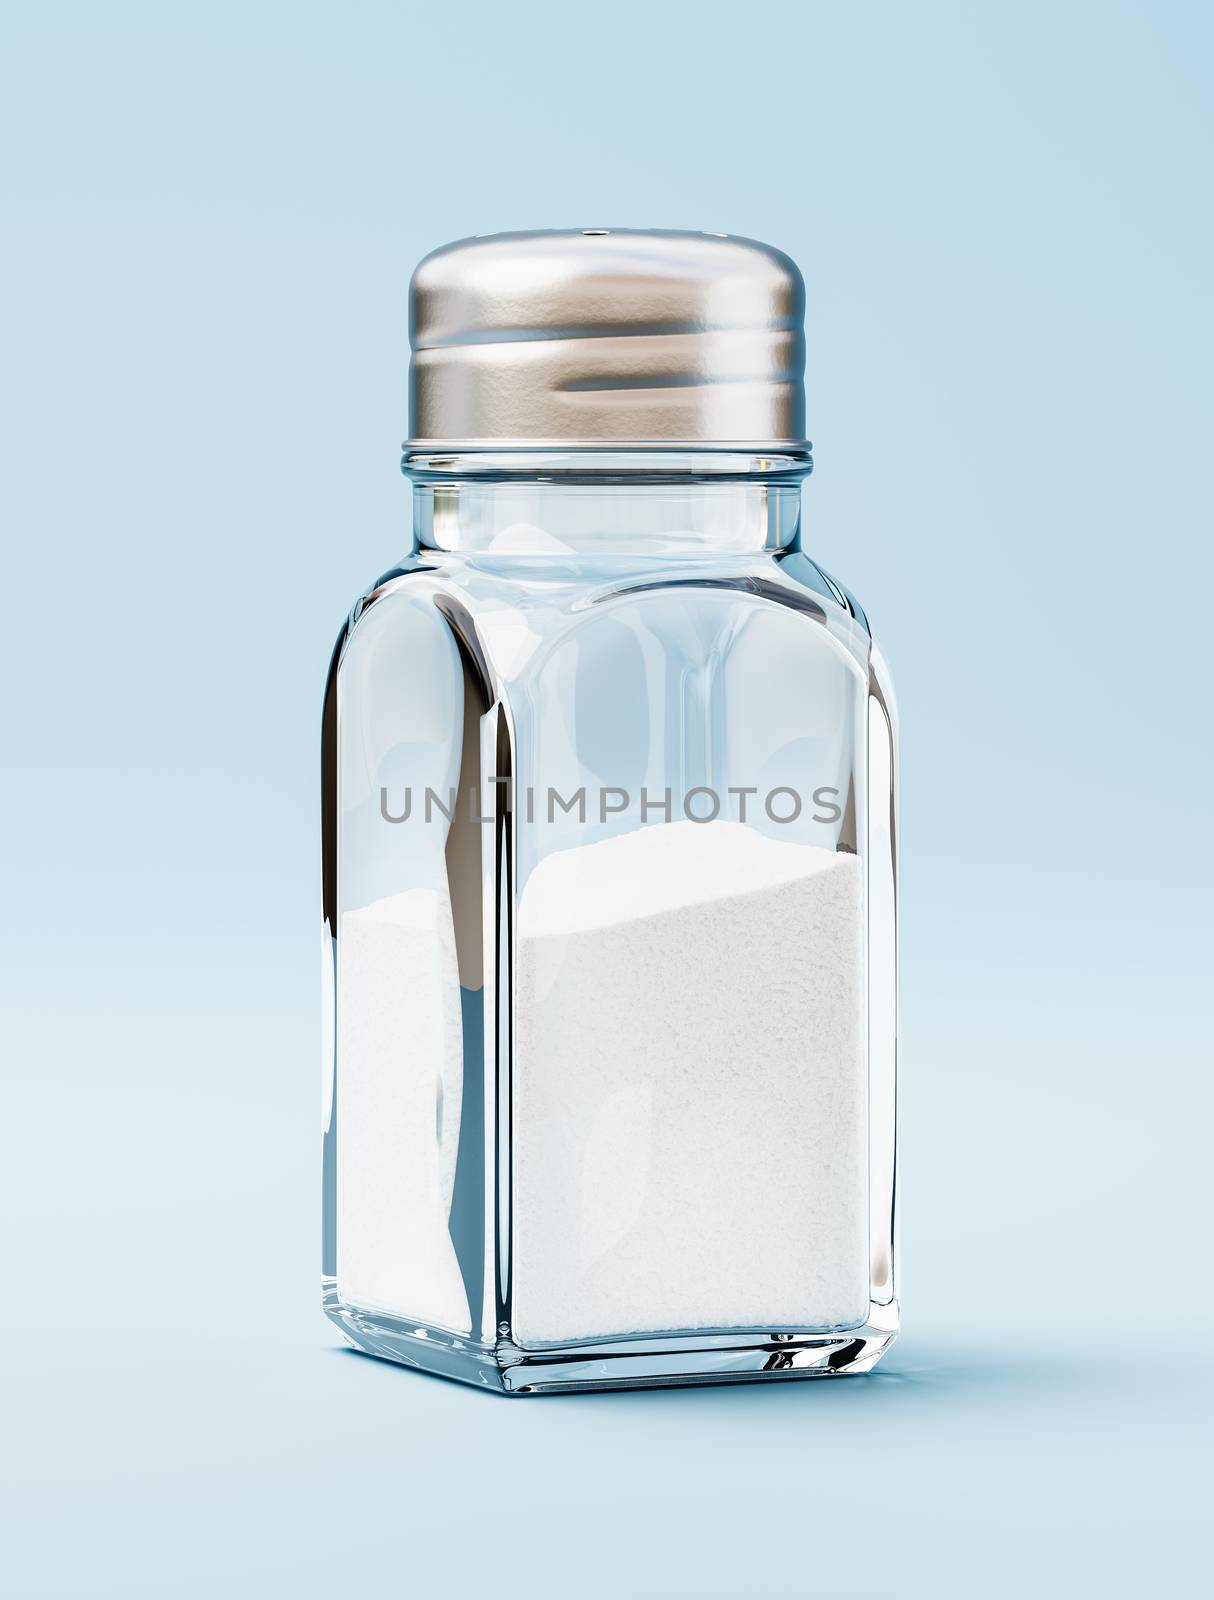 Salt in a Salt Shaker on Blue Background by make